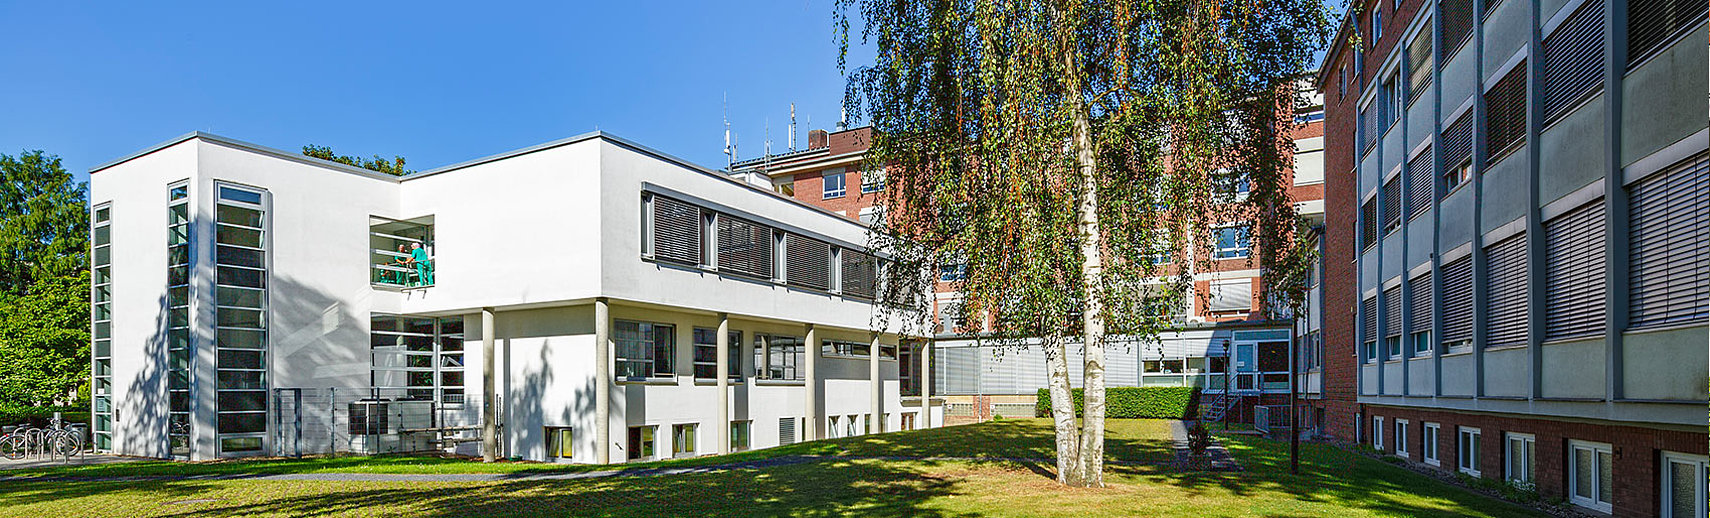 Informationen des Maria-Hilf-Krankenhauses in Bergheim